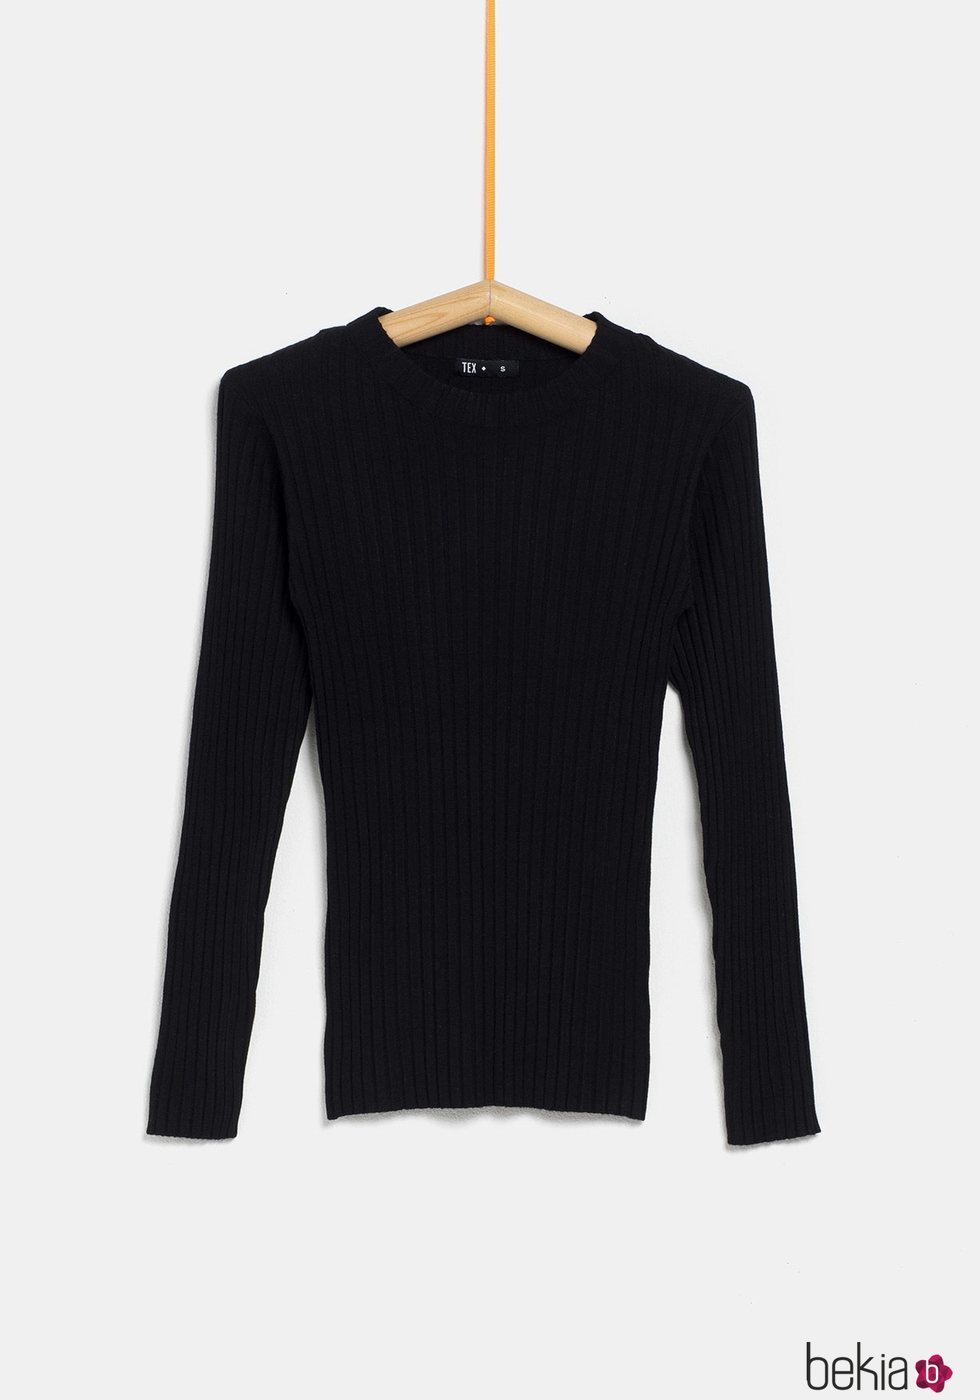 Jersey negro ceñido de la colección 'I-O' de Carrefour y TEX para otoño/invierno 2019